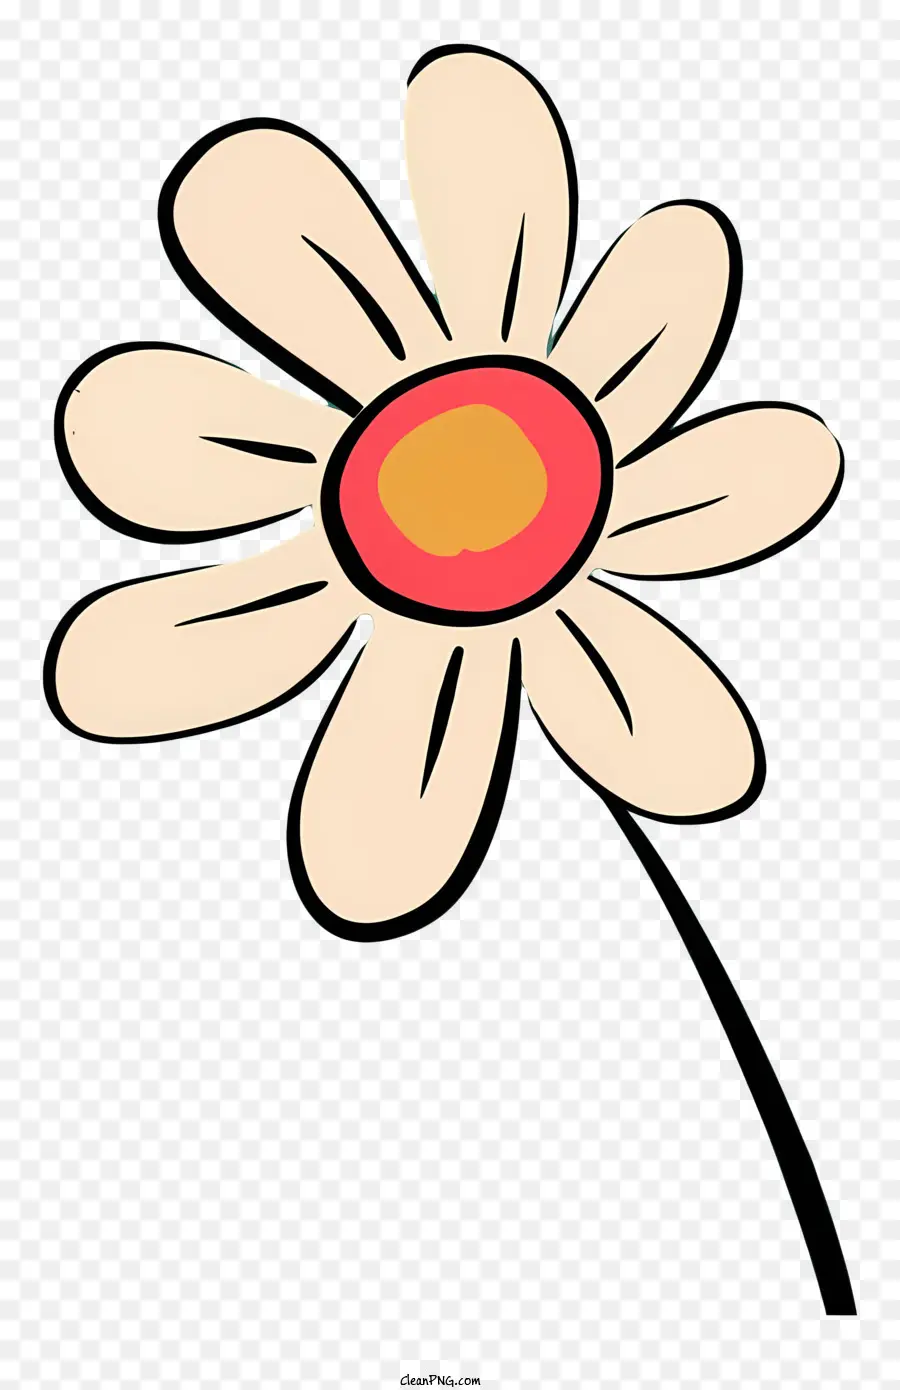 daisy fiore - Cartone animato minimalista margherita con petali bianchi e centro giallo